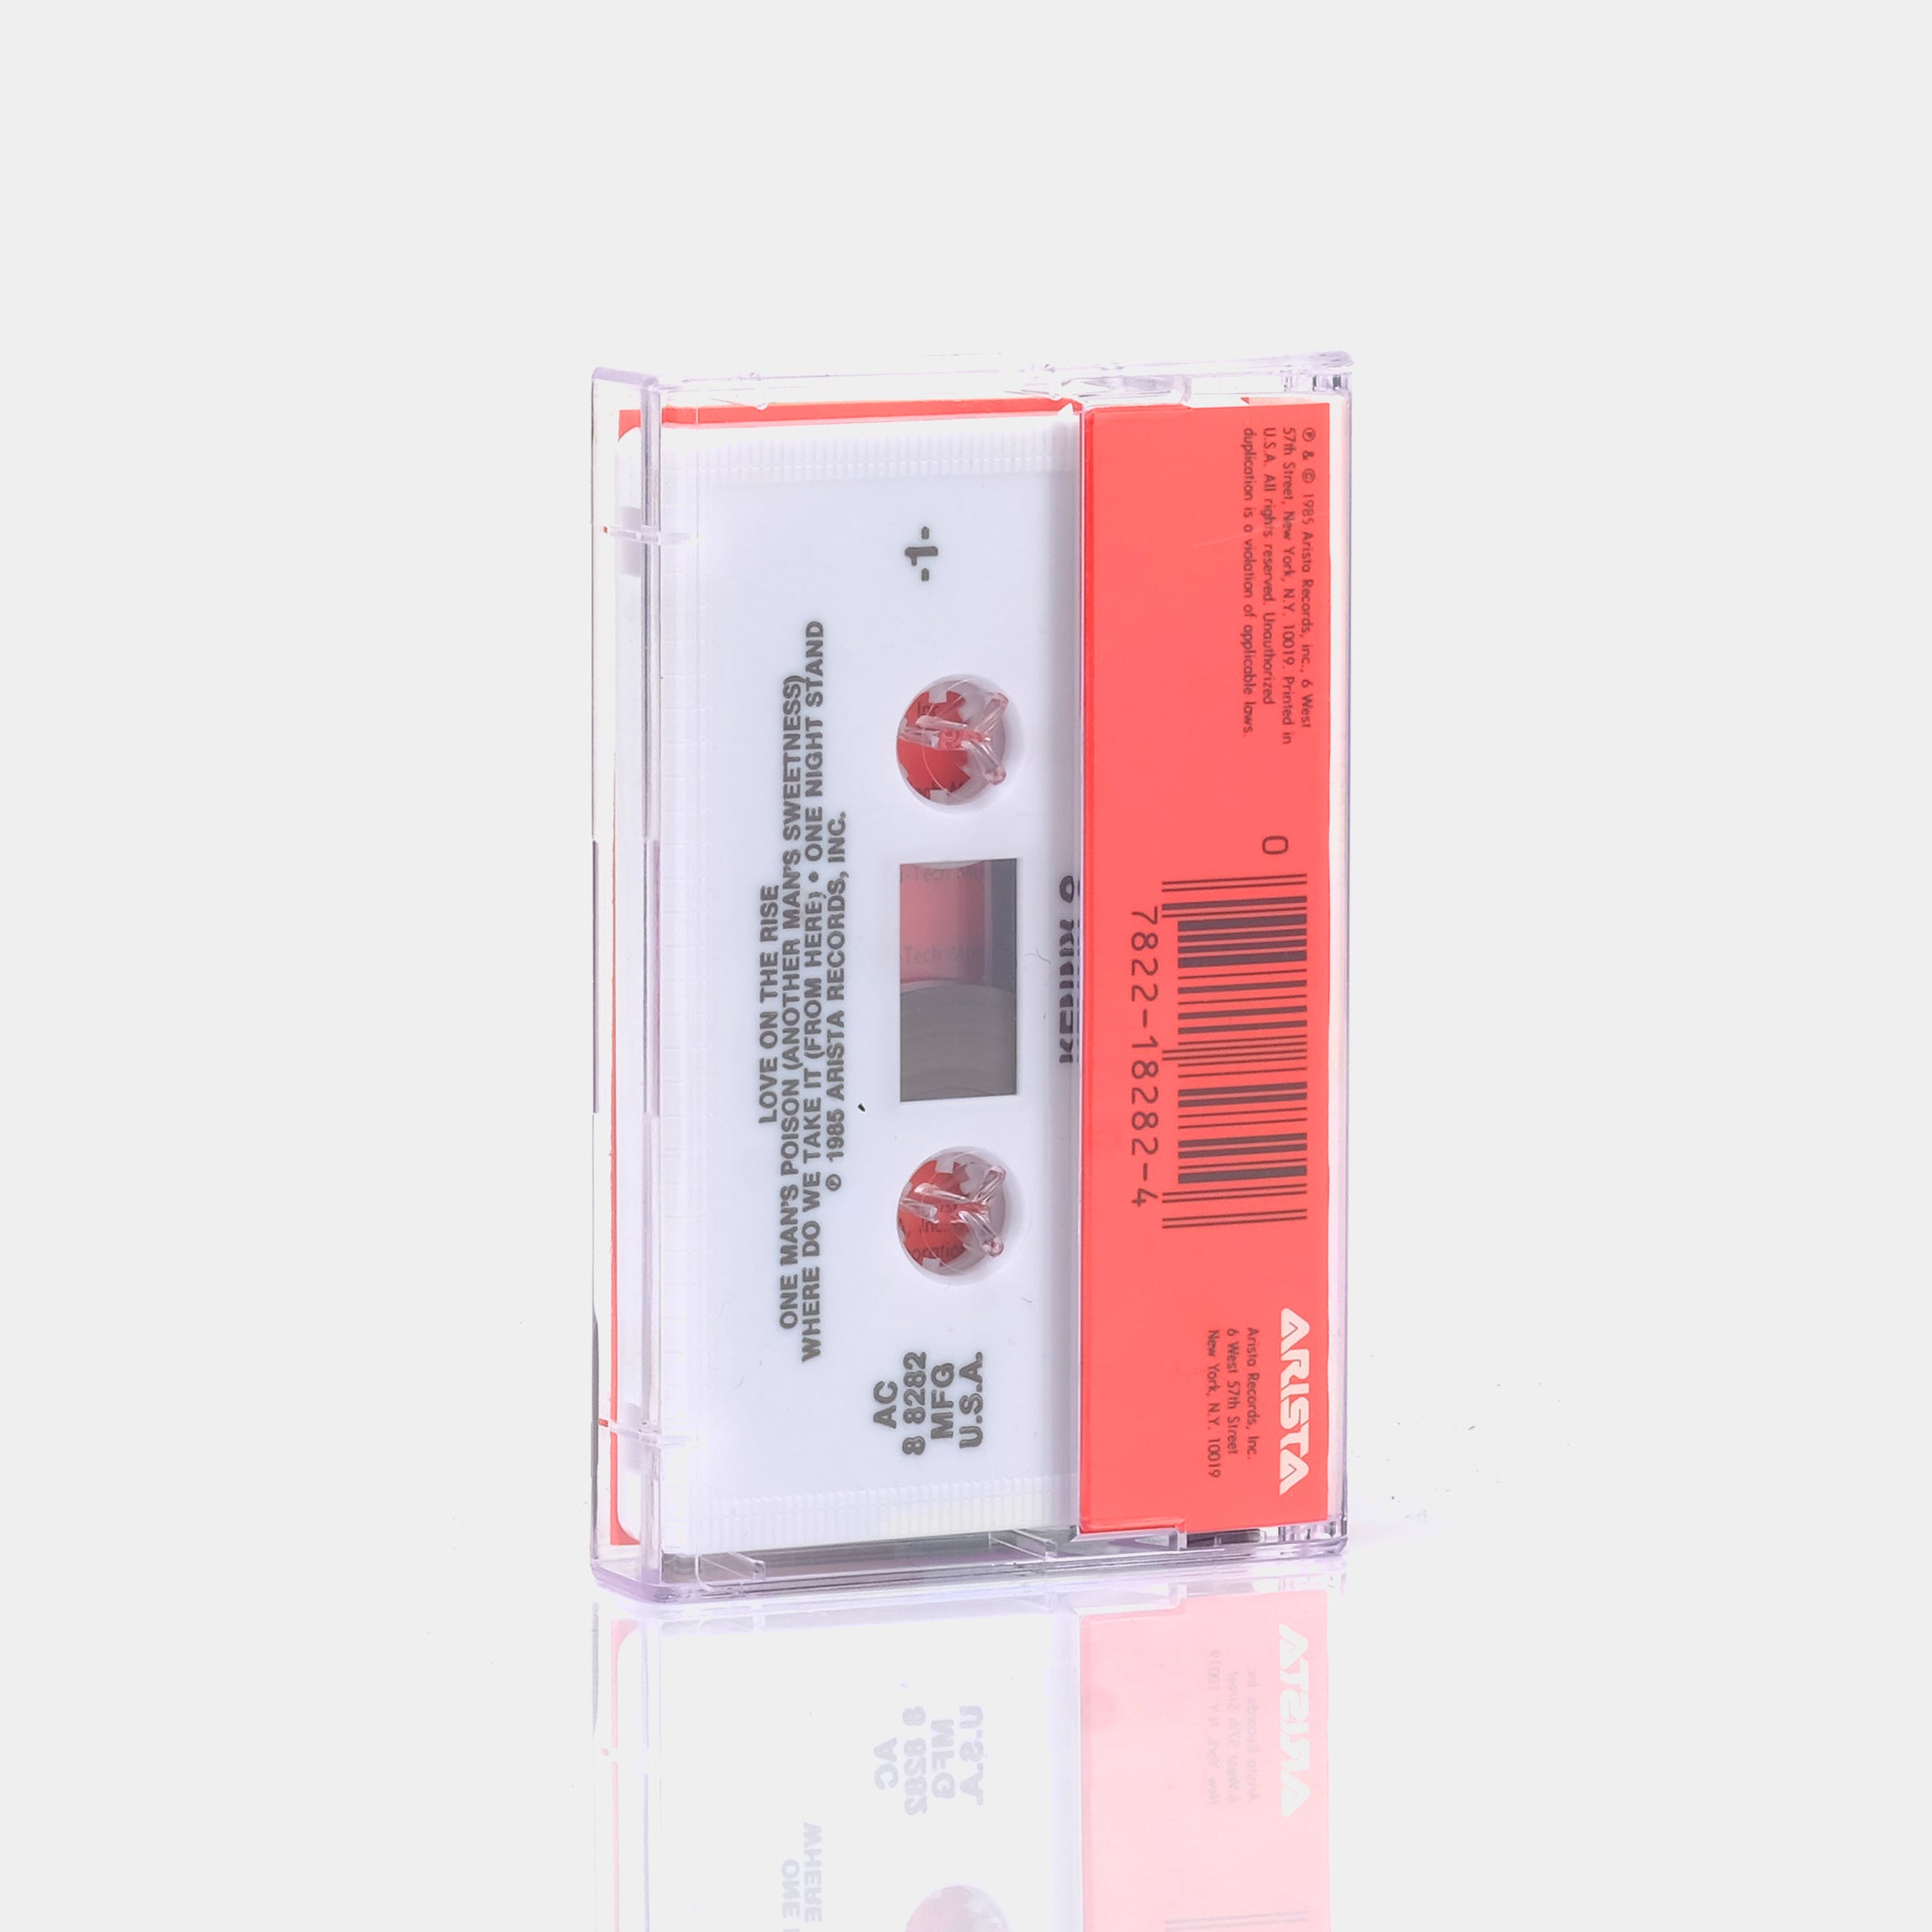 Kenny G - Gravity Cassette Tape